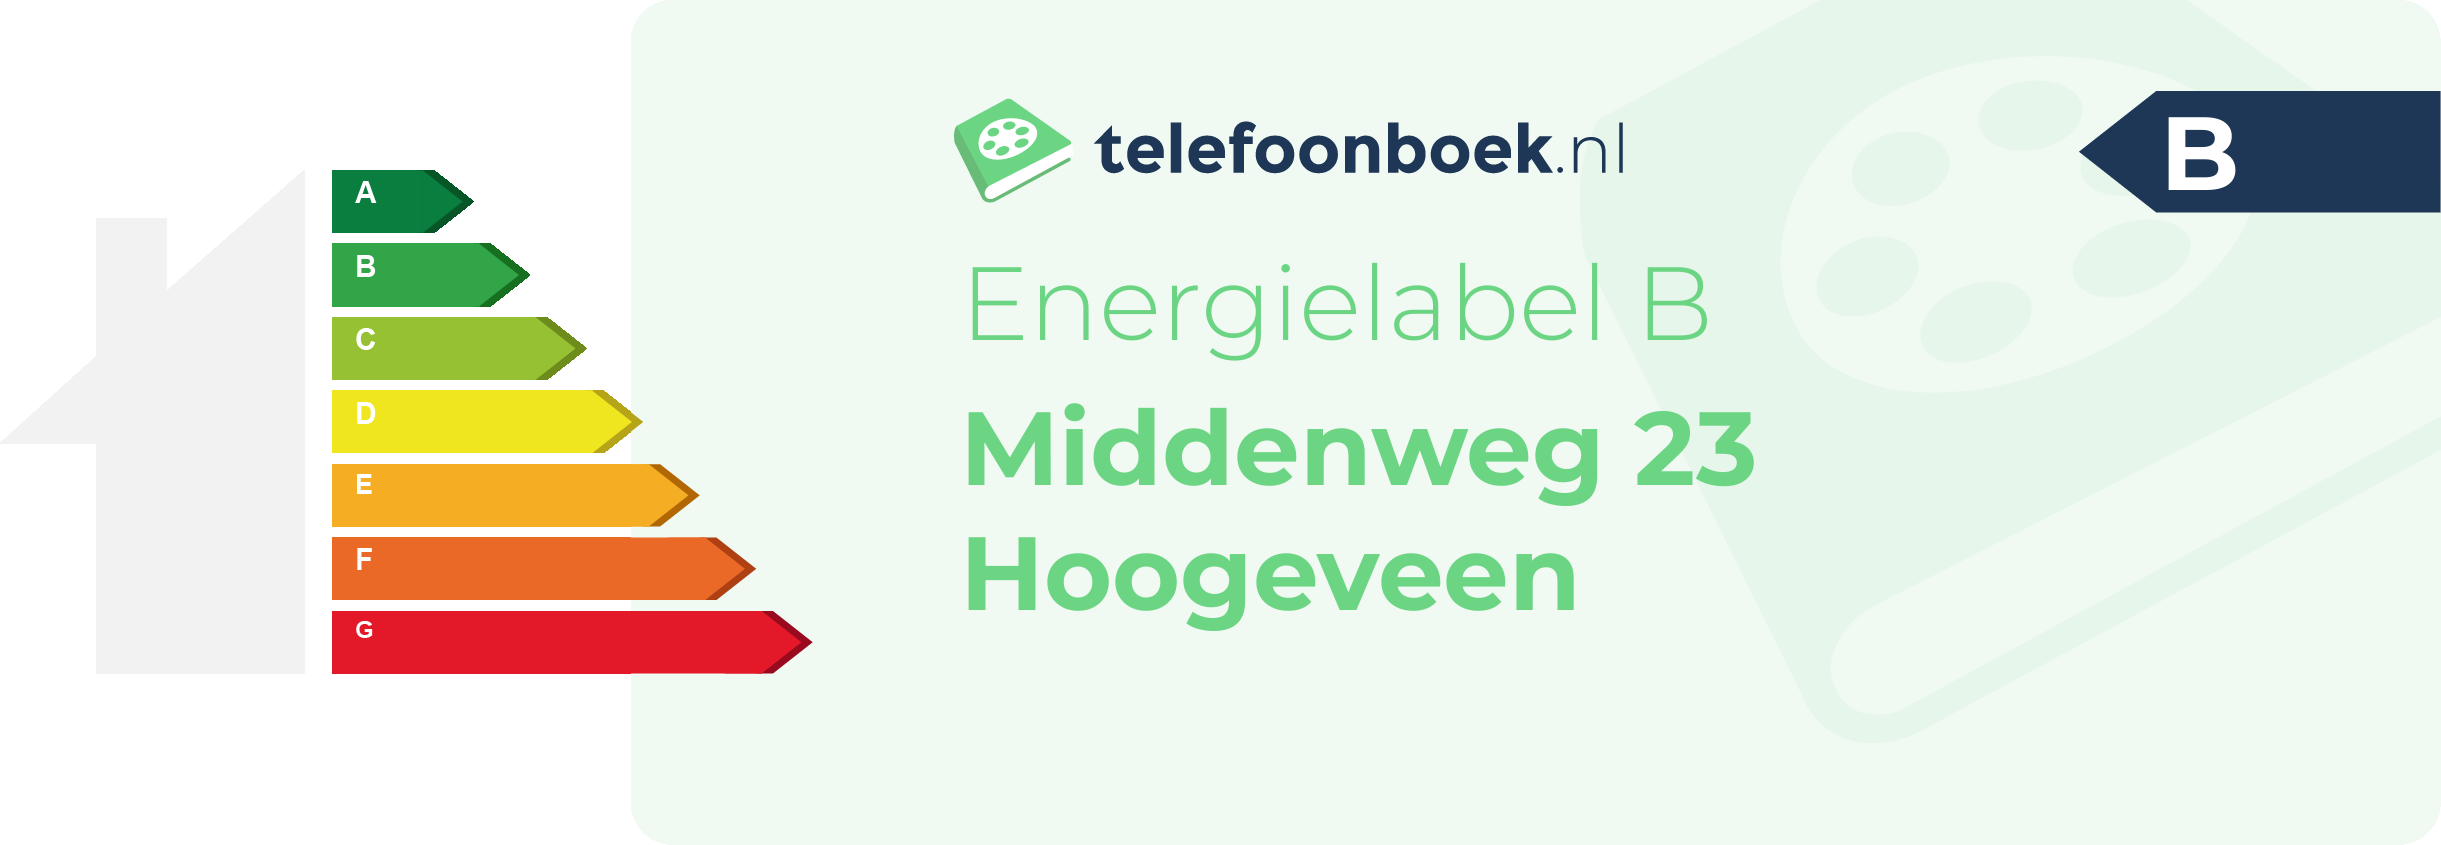 Energielabel Middenweg 23 Hoogeveen